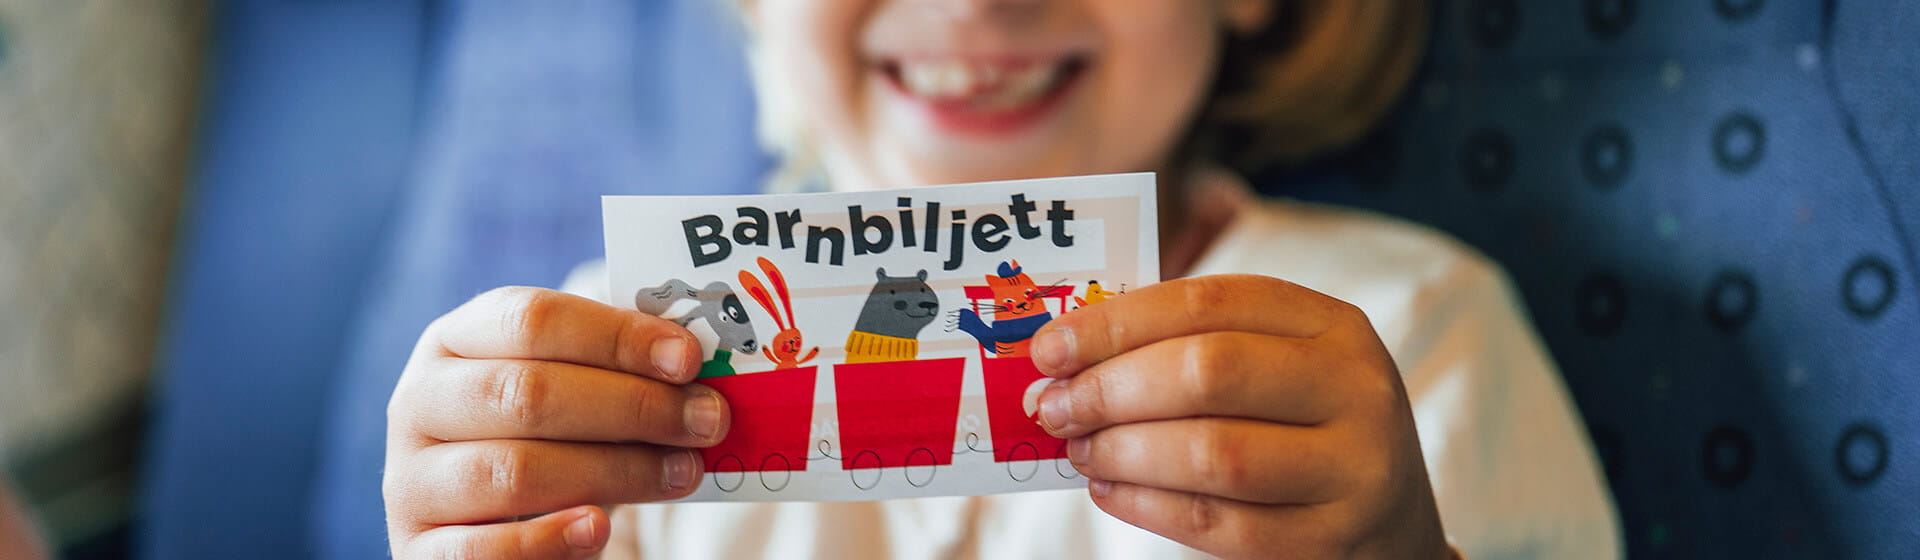 Ett barn håller upp en biljett med ordet "barnbiljett" på.